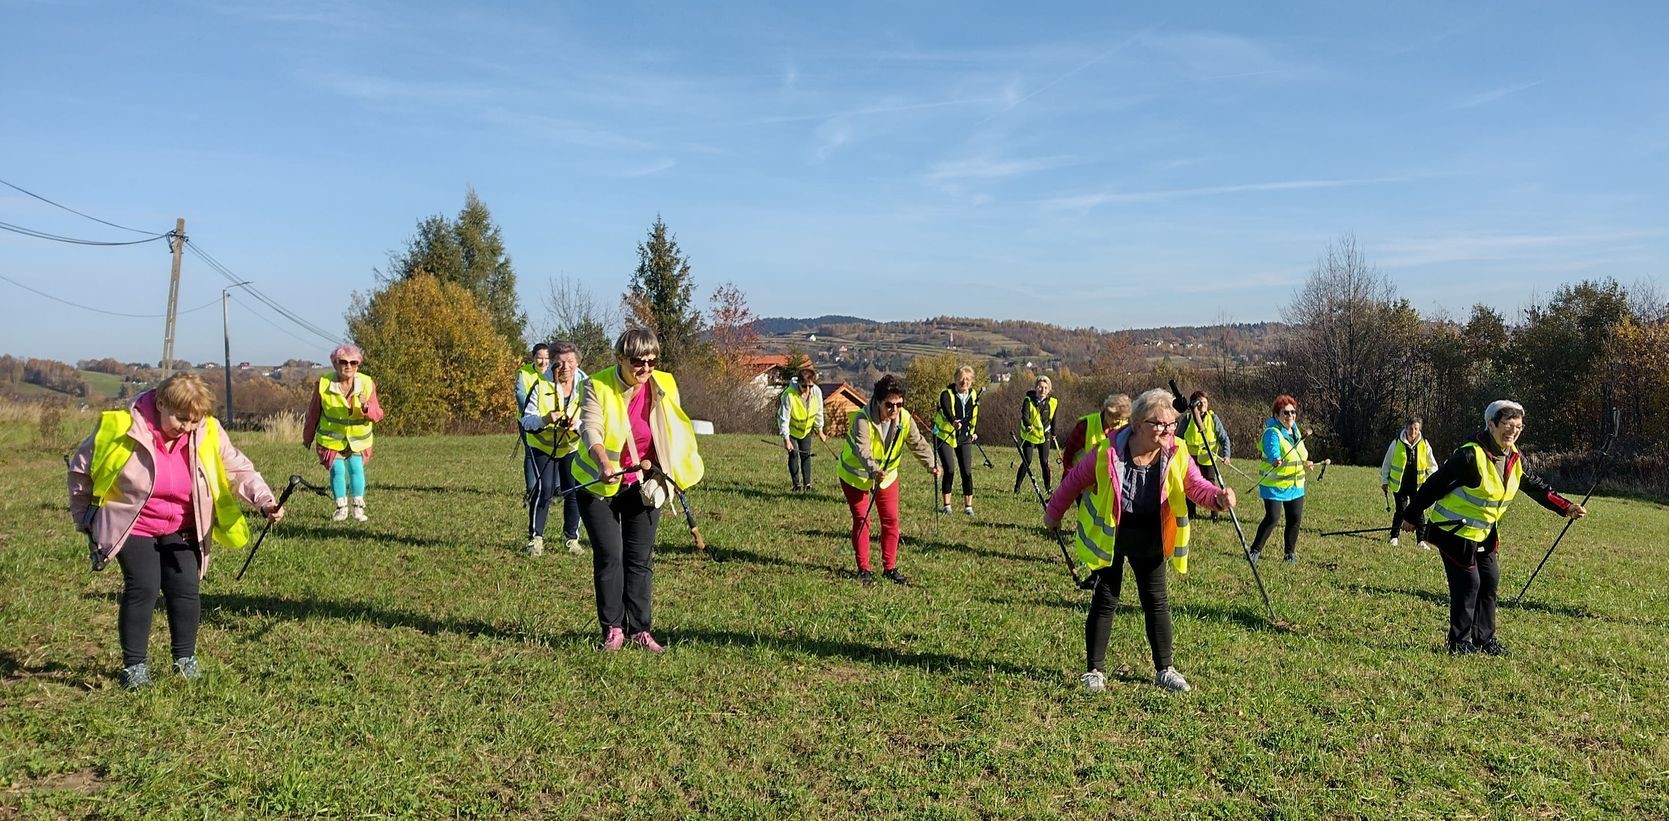 Na zdjęciu znajduje się osiemnaście kobiet, które w rzędach wykonują ćwiczenia rozciągające ich mięśnie, podczas zorganizowanego wspólnego spaceru szlakami Nordic Walking.